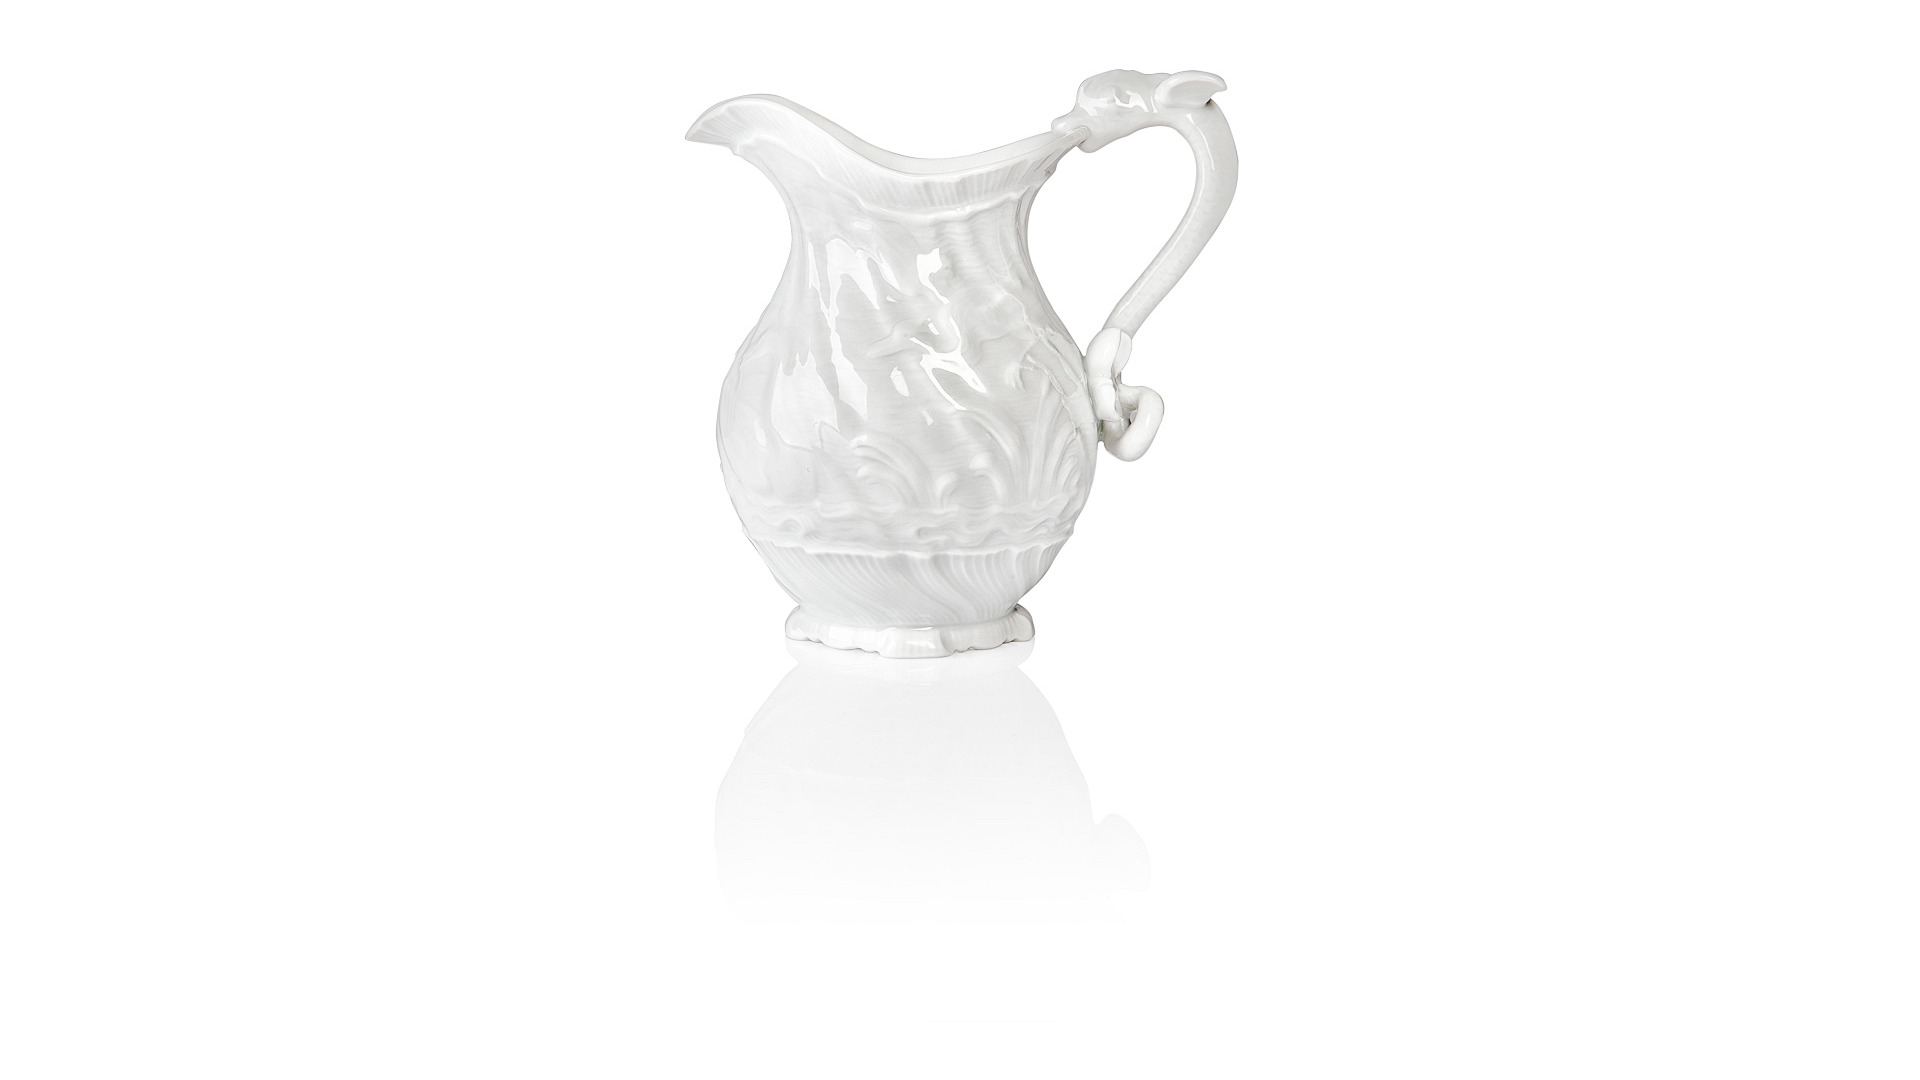 Сервиз чайный Meissen Лебединый сервиз, белый рельеф на 6 персон 15 предметов, фарфор